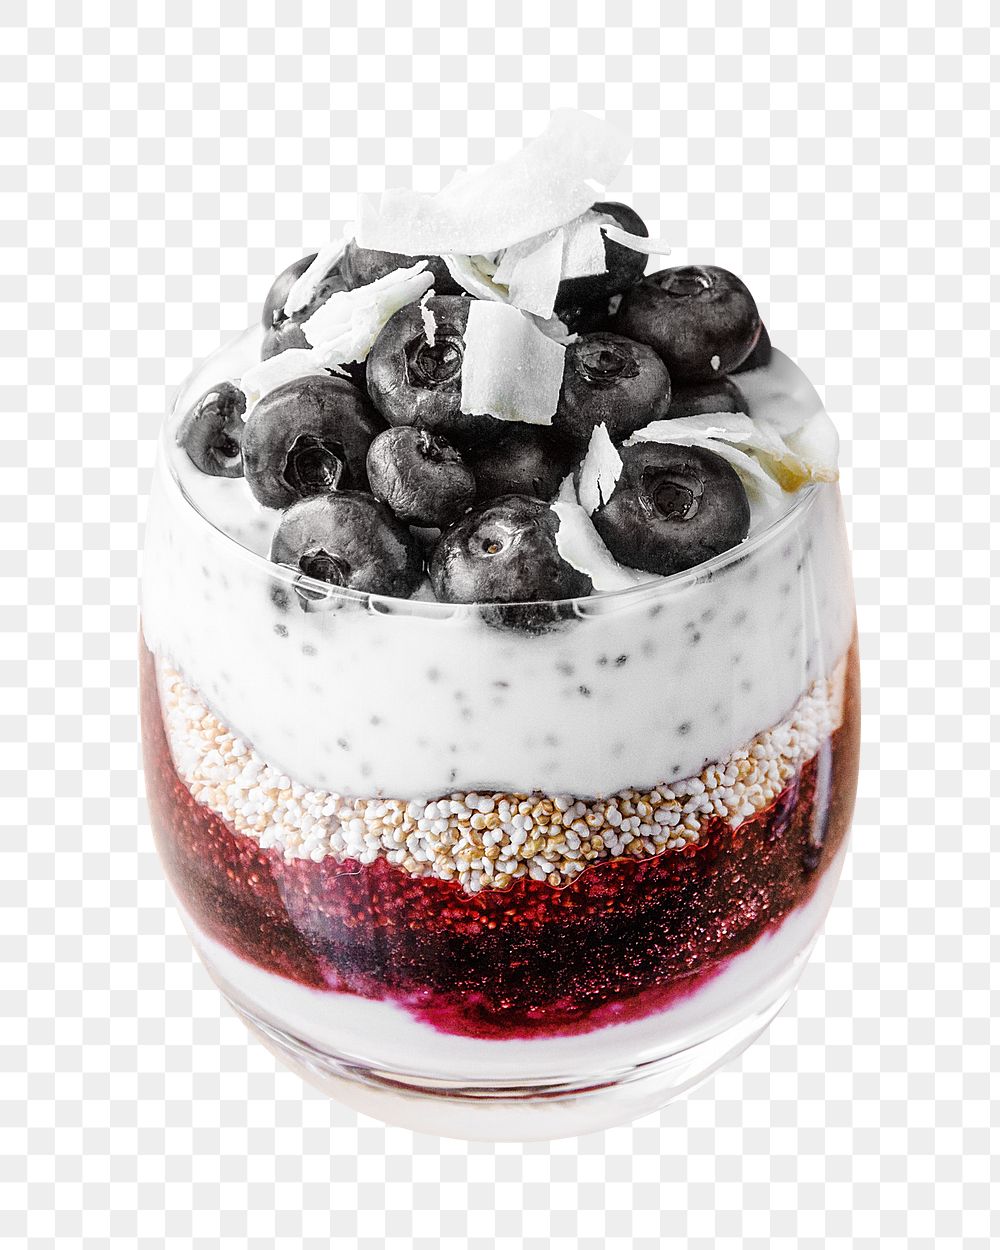 Blueberry yogurt parfait  png collage element, transparent background